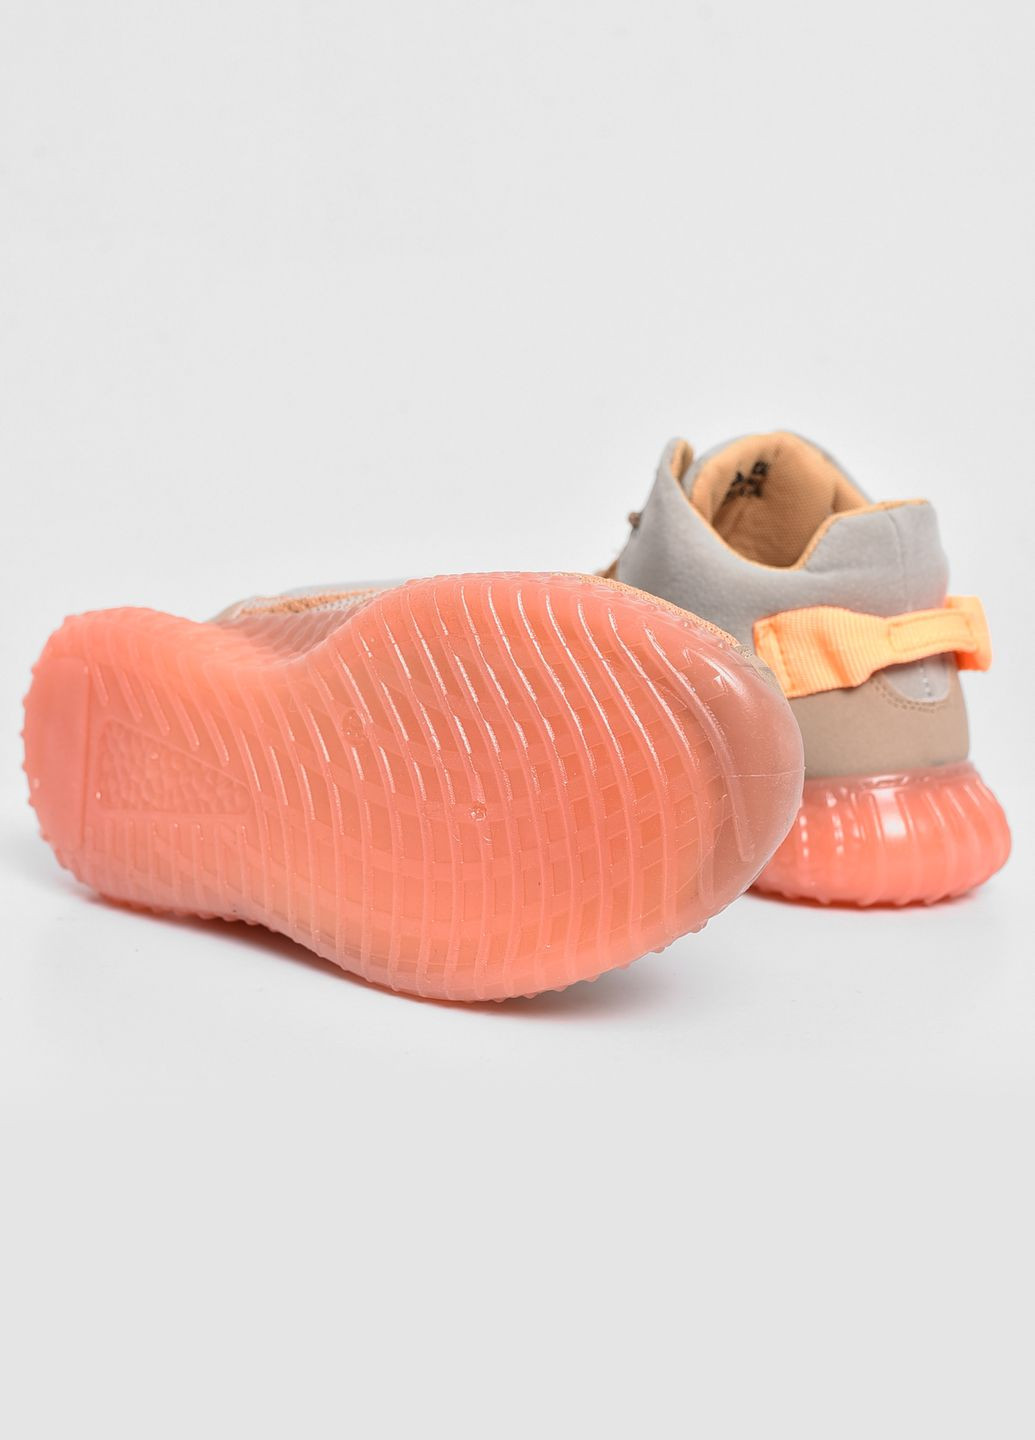 Помаранчеві Осінні кросівки чоловічі помаранчевого кольору на шнурівці текстиль Let's Shop